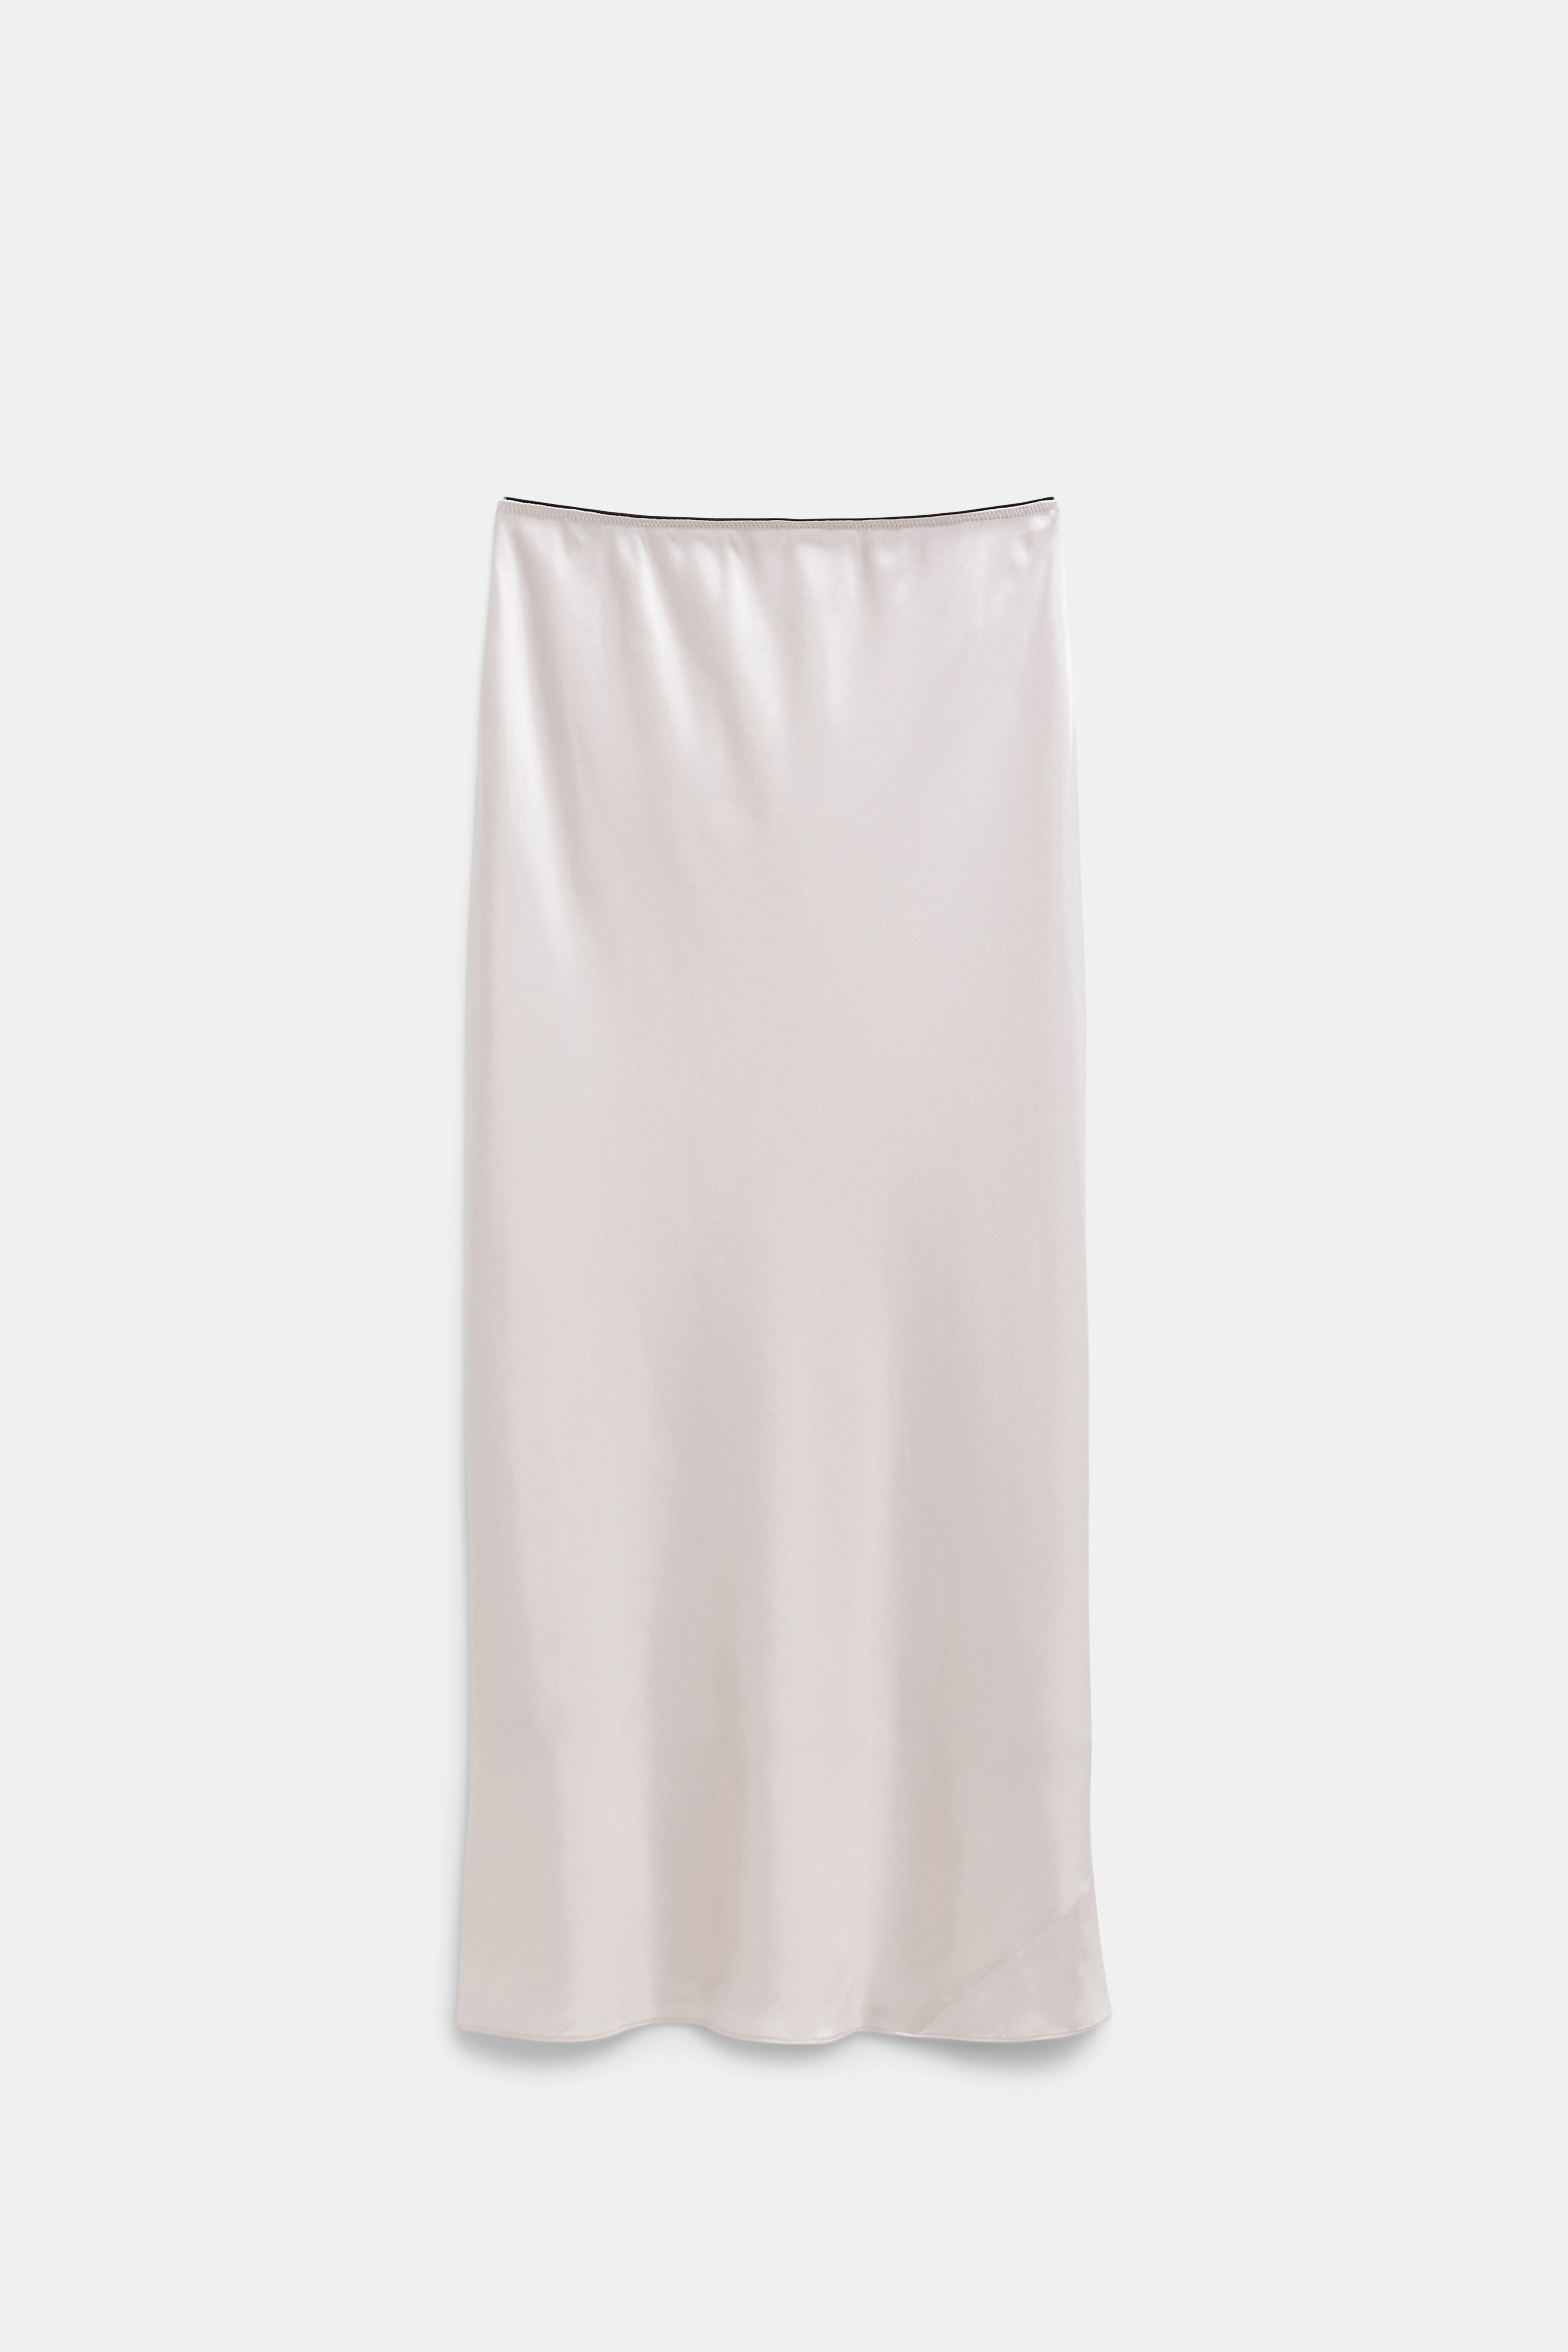 Dorothee Schumacher Sense Of Shine Skirt In White